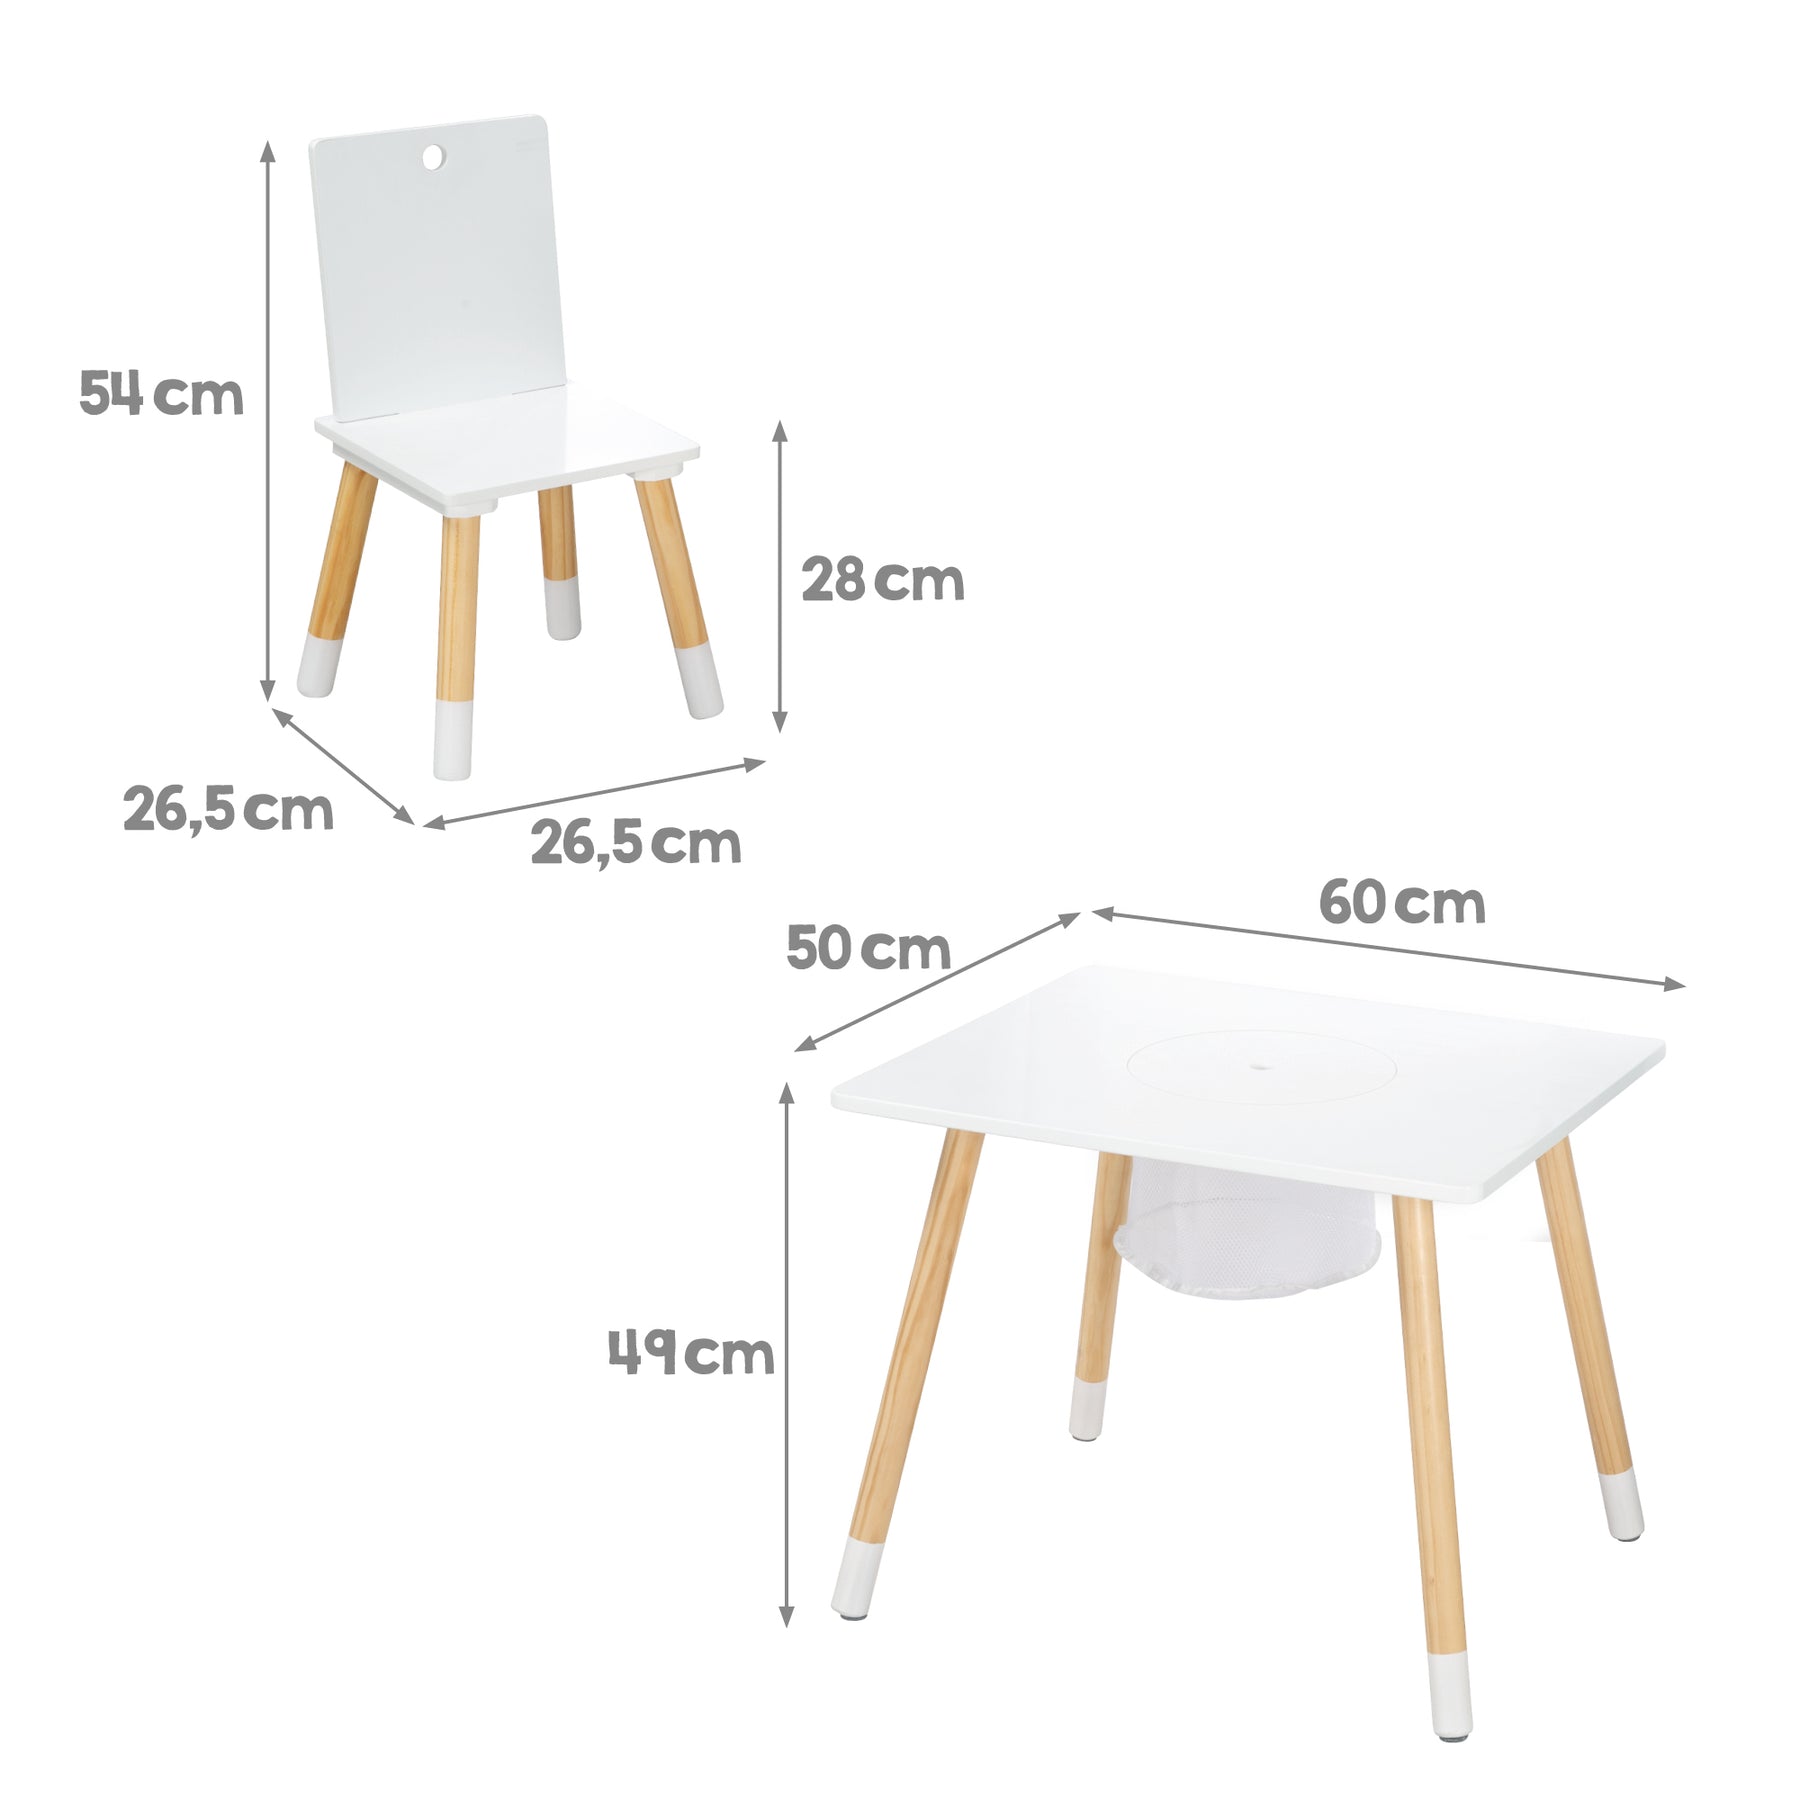 Kindersitzgruppe, Kindermöbel Set aus 2 Kinderstühlen & 1 Tisch, Holz, –  kidtini GmbH